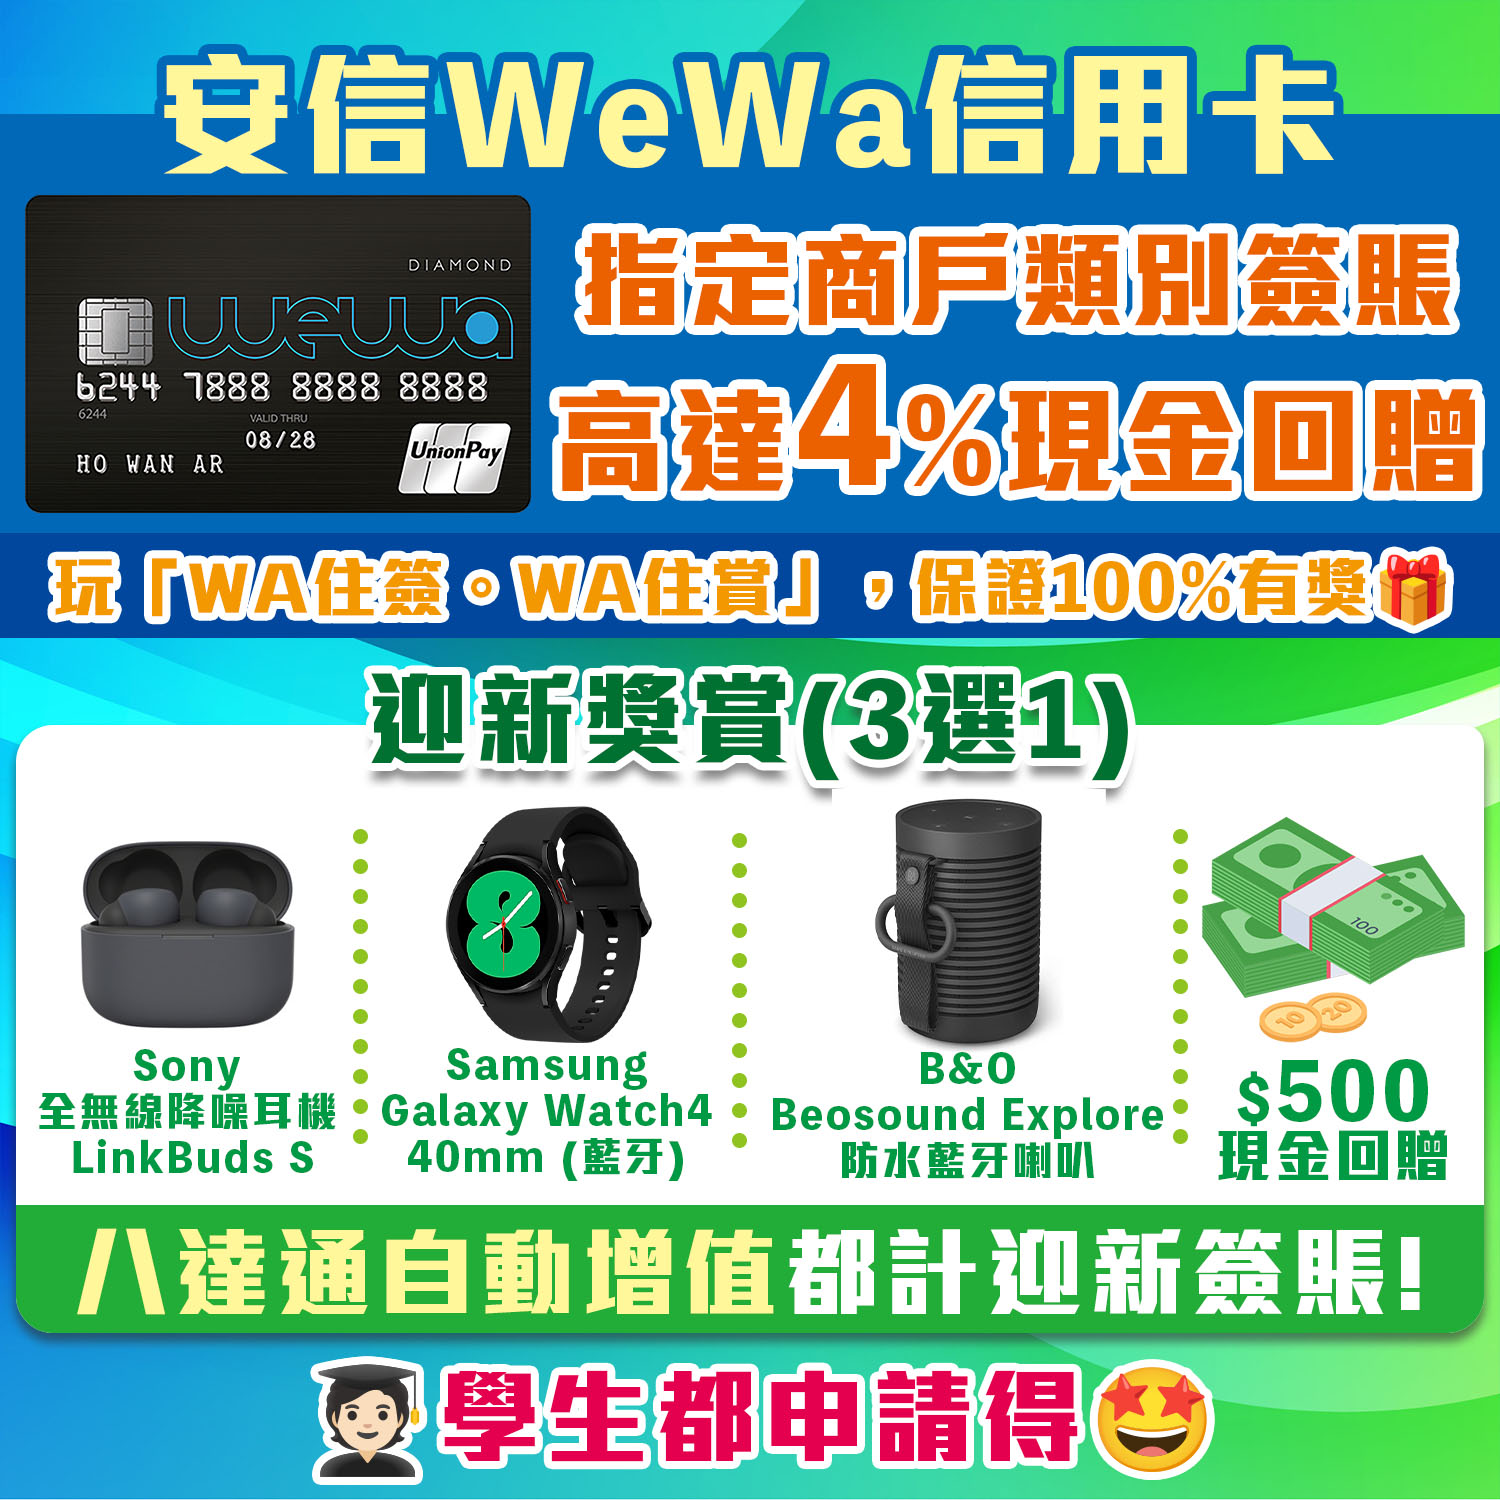 【安信Wewa信用卡】本地/海外簽賬享高達4%回贈！迎新可選Sony全無線降噪耳機 / Samsung Galaxy Watch4 / B&O藍牙喇叭 / HK$500現金回贈！經網上申請再多額外HK$200現金回贈！學生都開得！